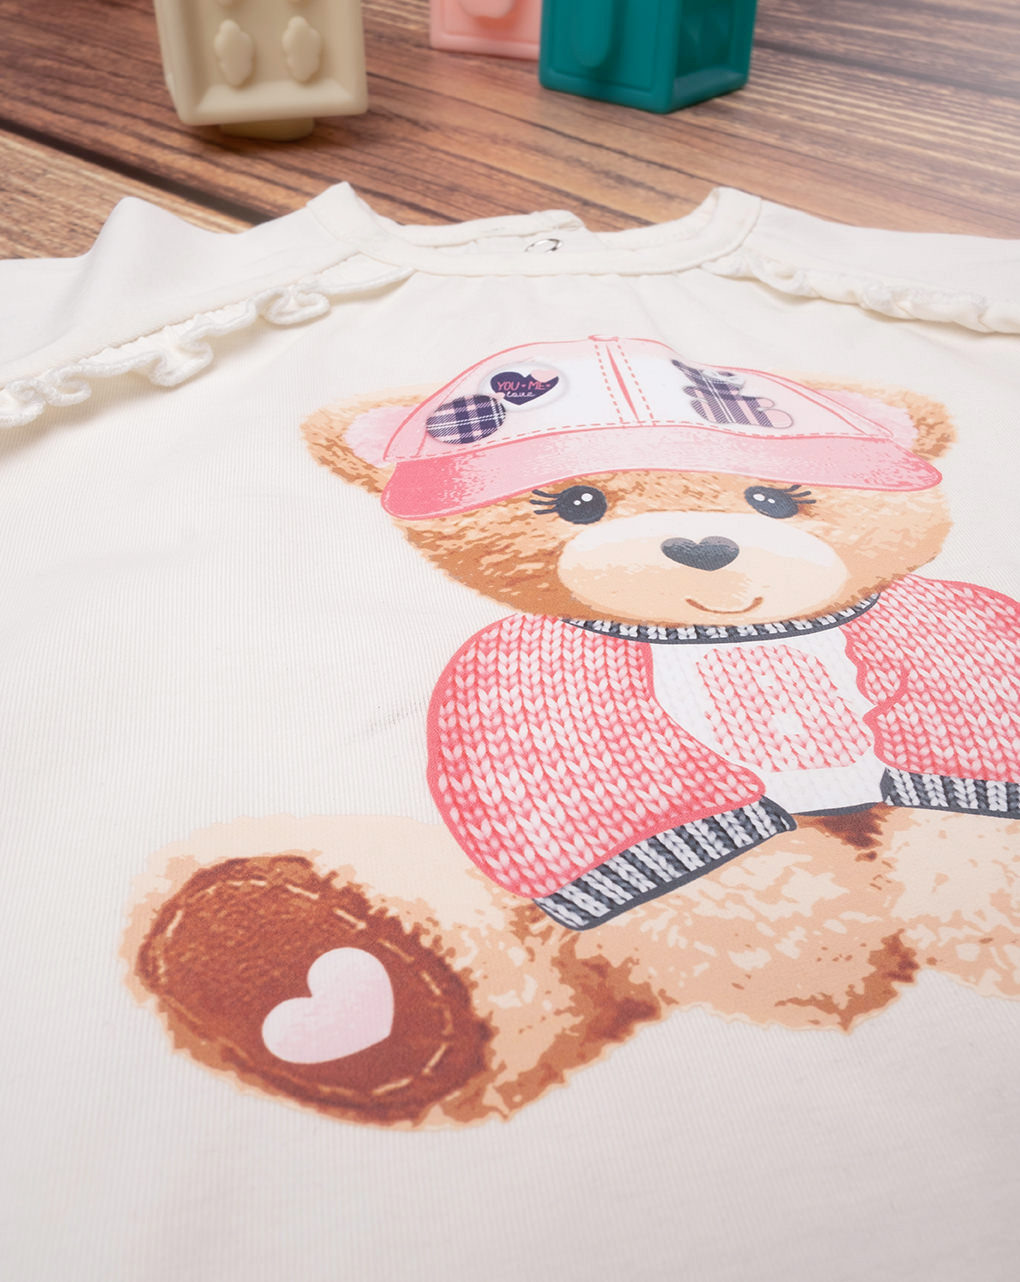 βρεφική μπλούζα λευκή με αρκουδάκι για κορίτσι - Prénatal